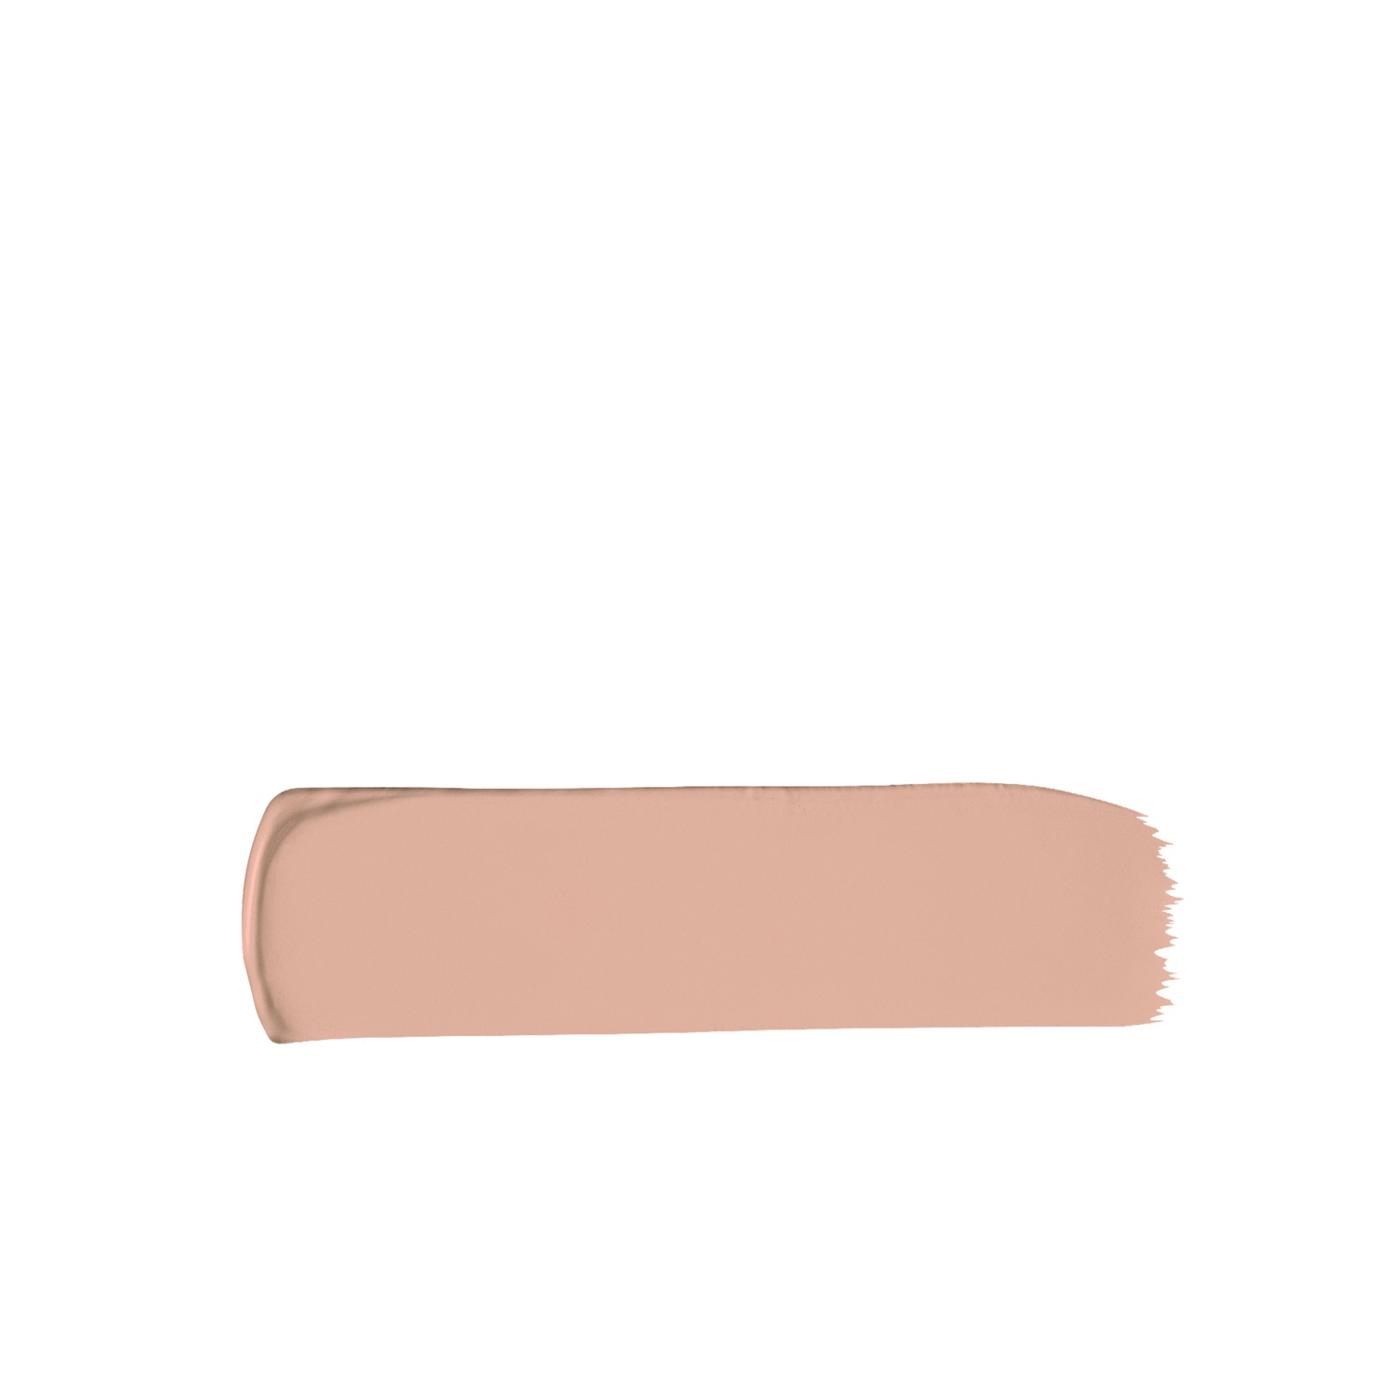 L'Oréal Paris Infallible Pro-Matte Blendable Foundation, Oil Free 104.5 Nude Buff; image 4 of 5